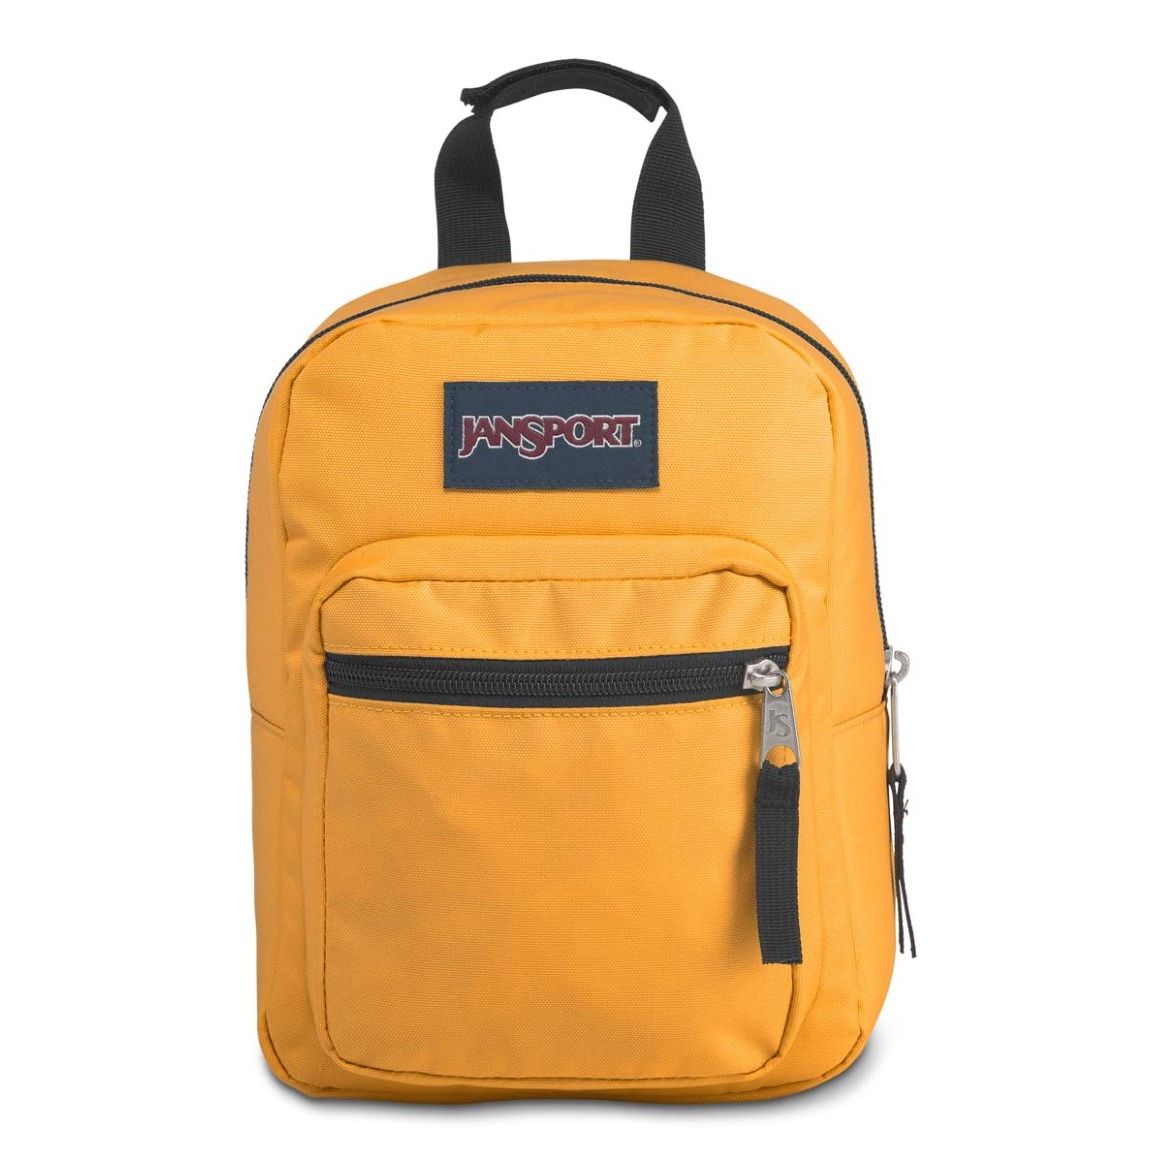 Jansport Big Break Spectra Yellow Backpack